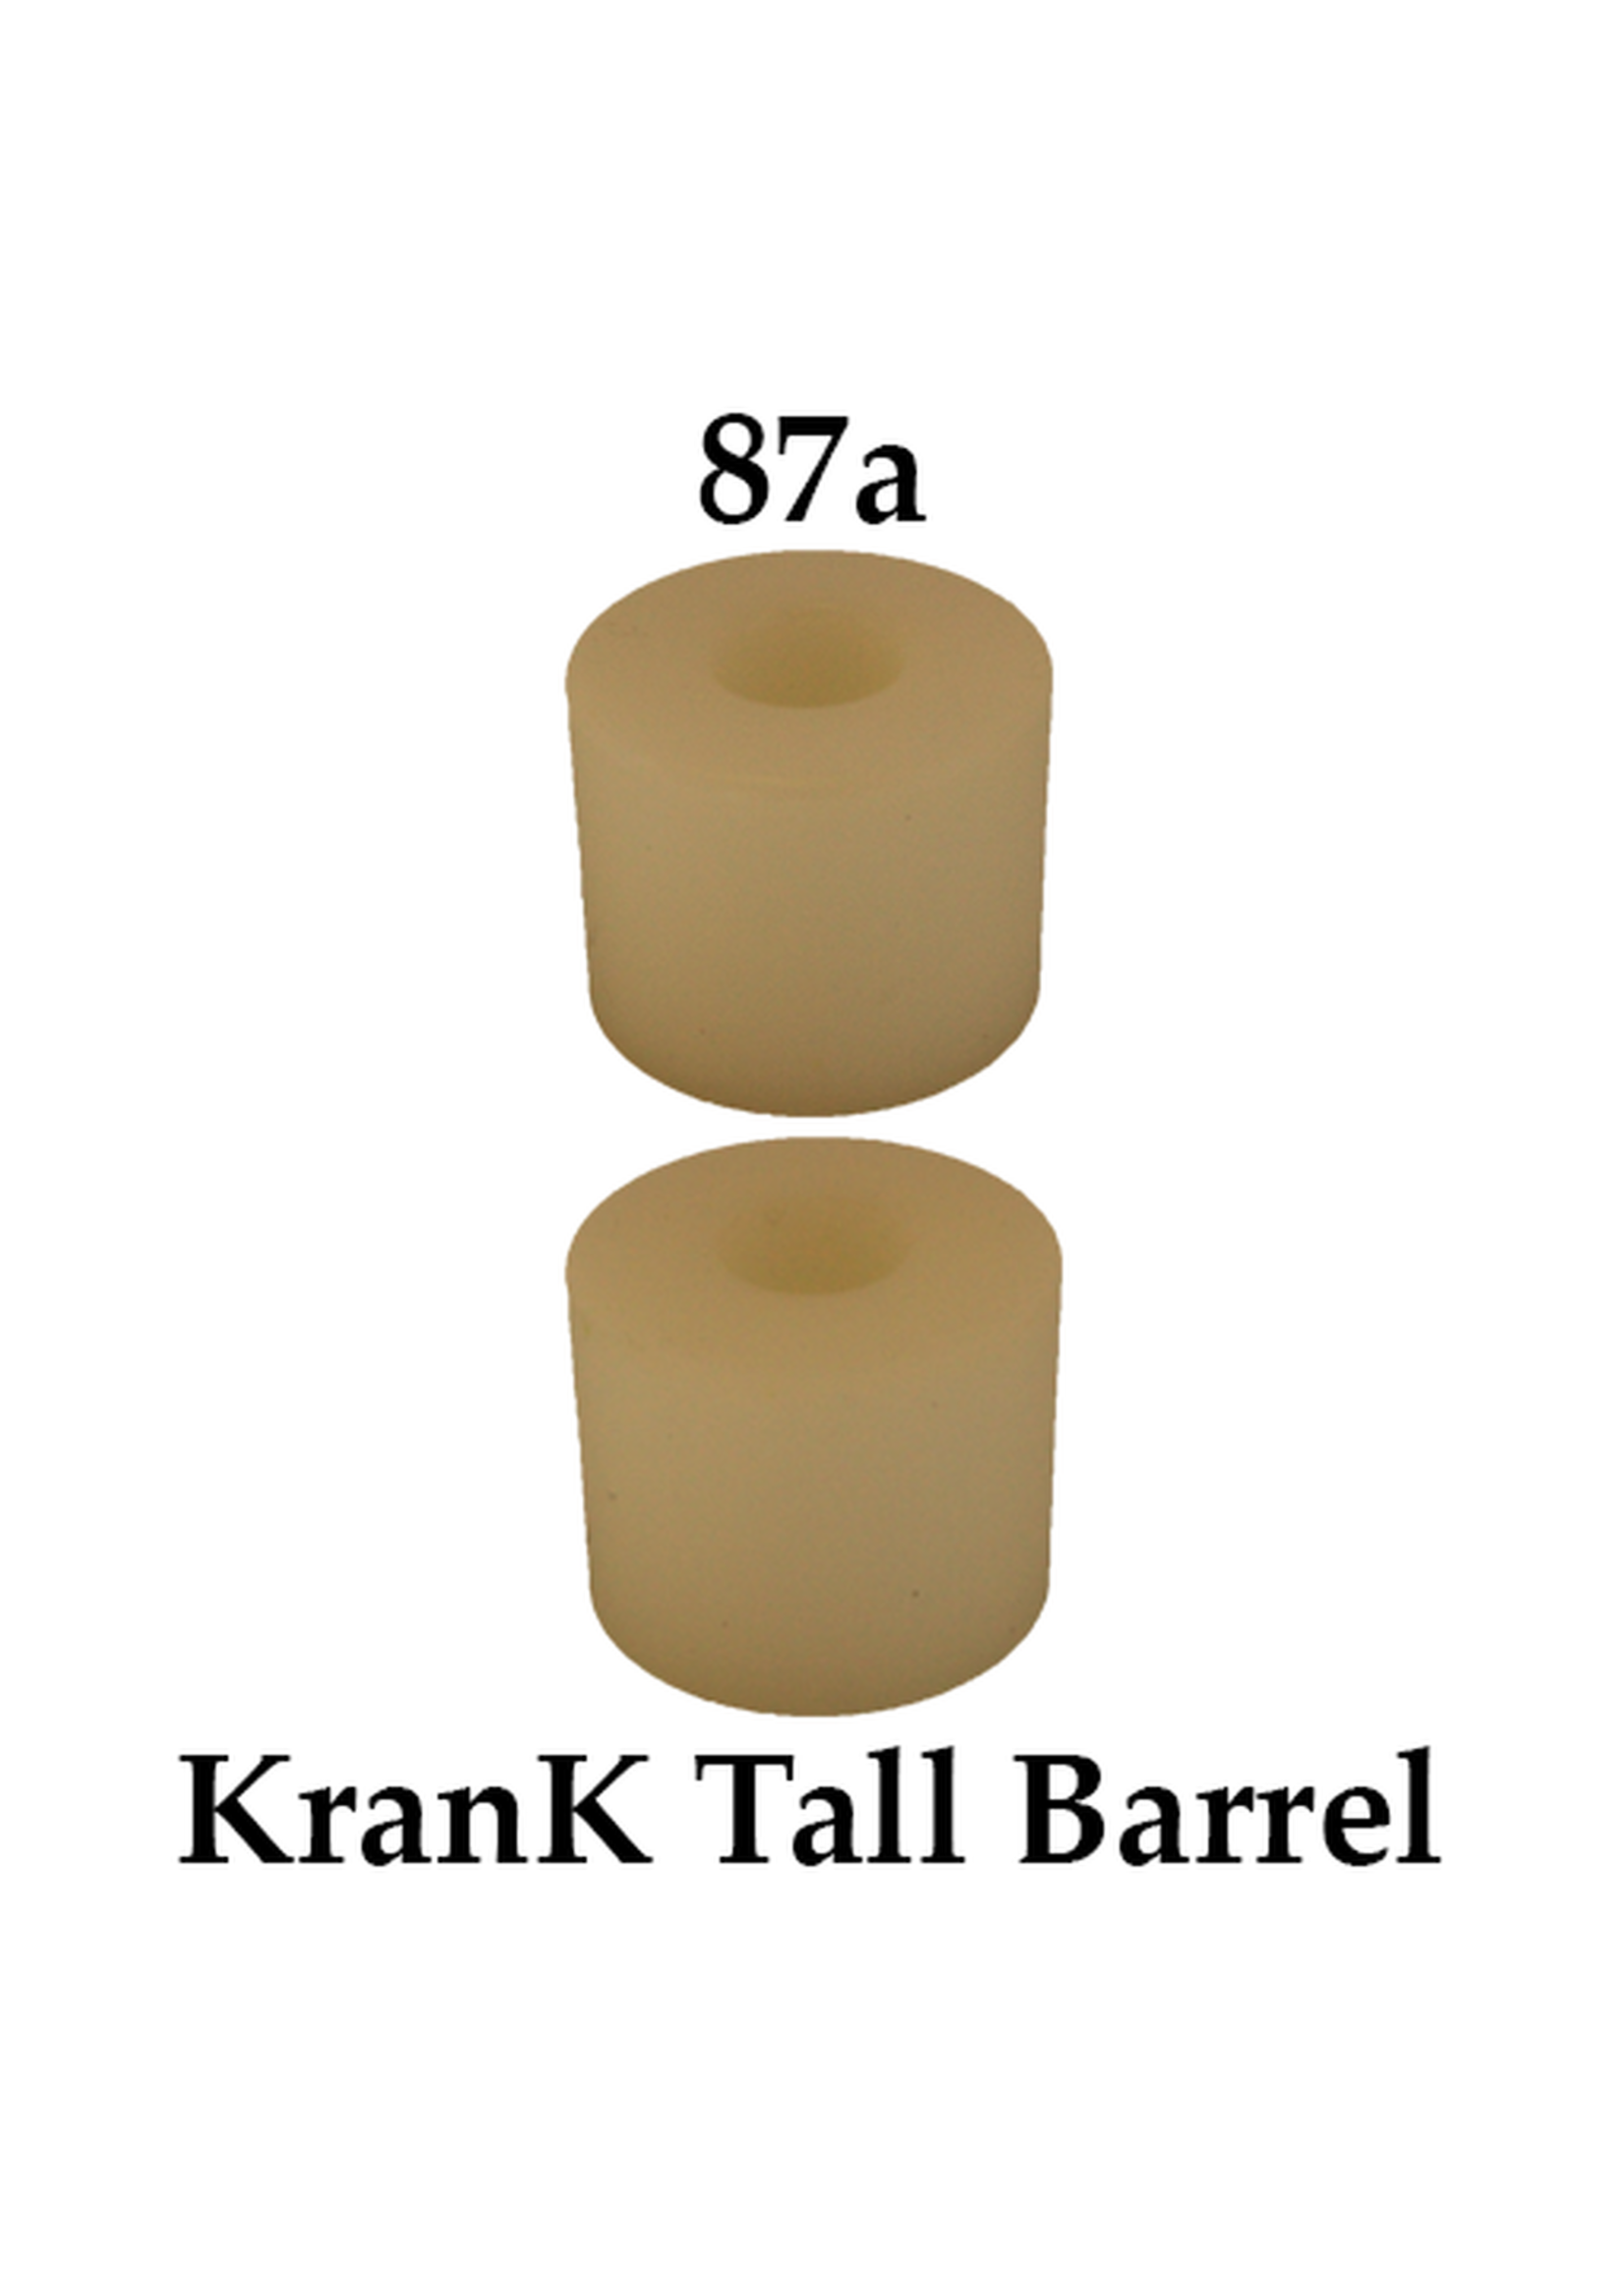 Riptide Sports KRANK Tall Barrel